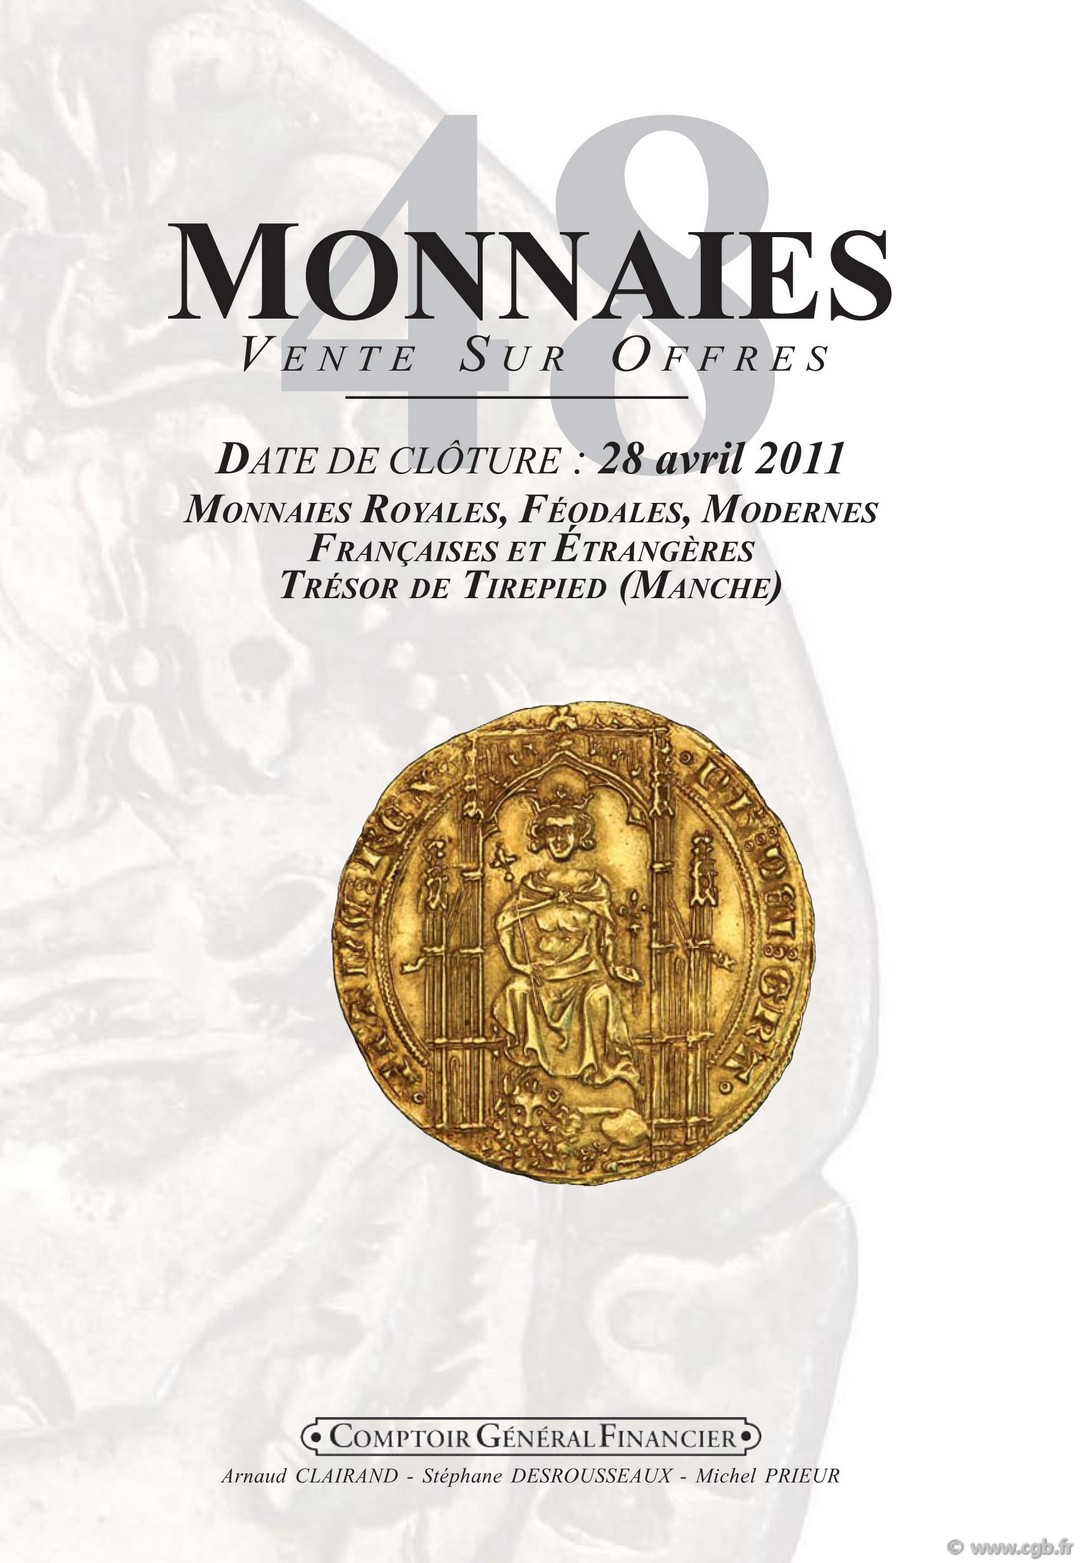 Monnaies 48, monnaies royales et modernes, trésor de Tirepied (Manche) CLAIRAND Arnaud, DESROUSSEAUX Stéphane, PRIEUR Michel 